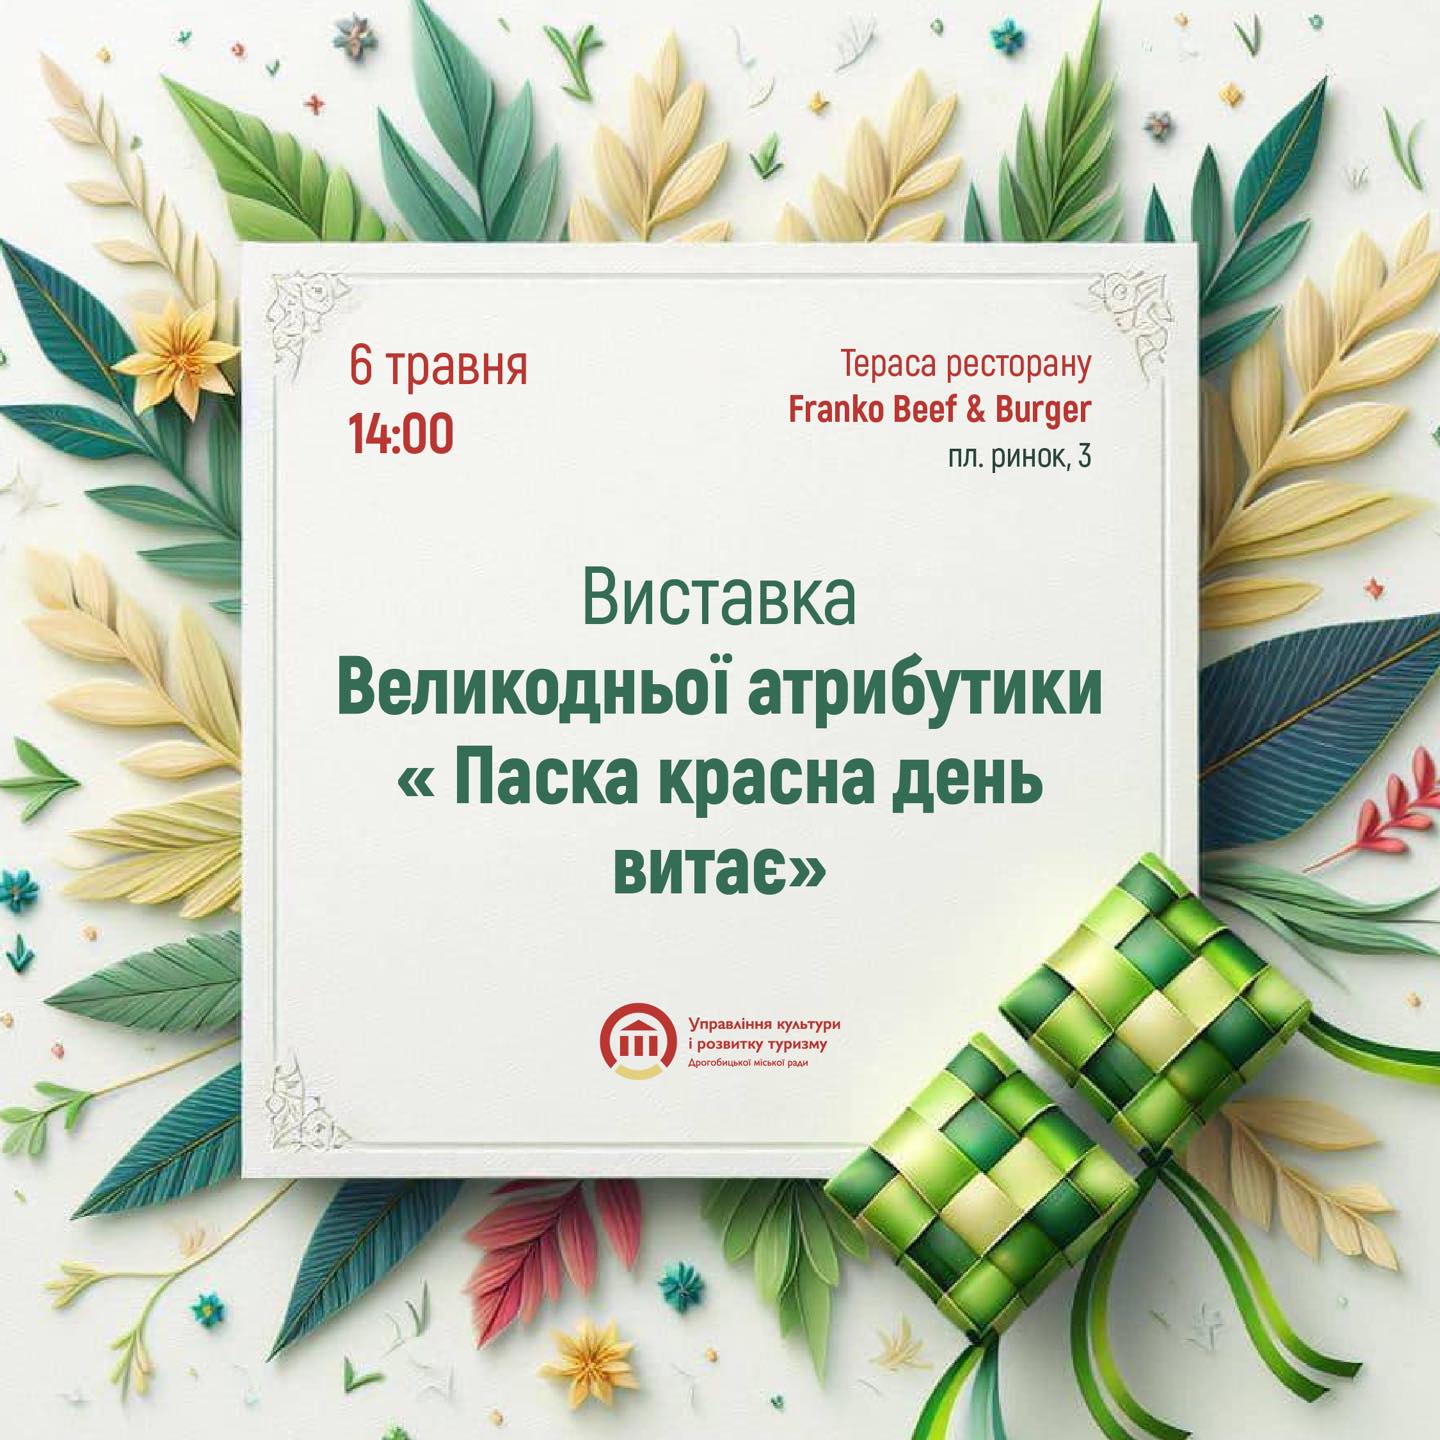 Сьогодні у Дрогобичі презентують виставку Великодньої атрибутики